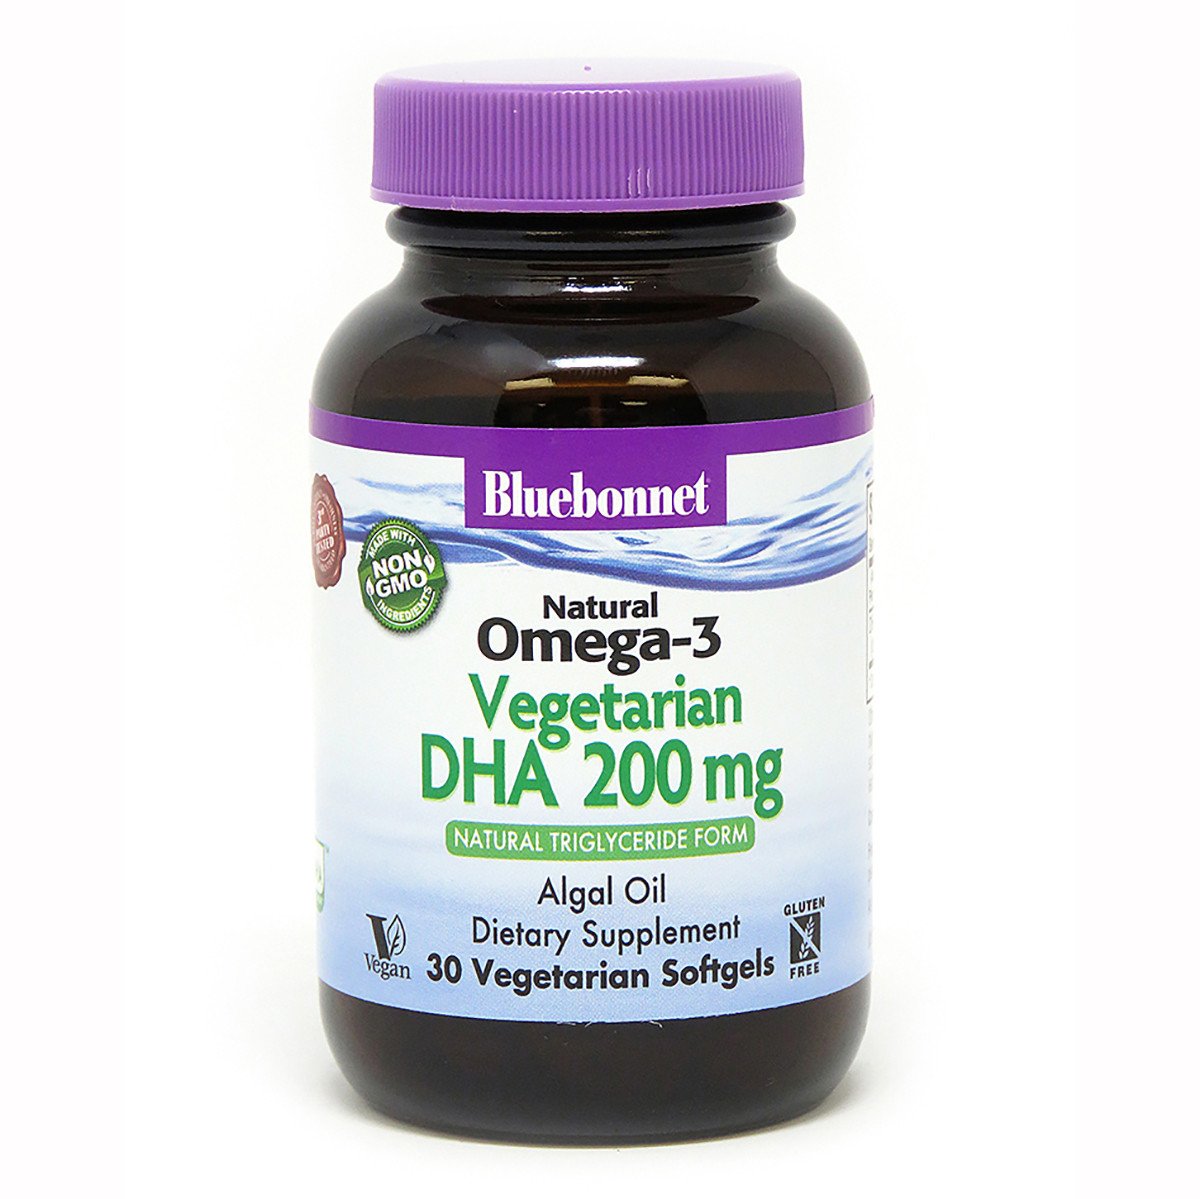 Bluebonnet Nutrition Вегетарианская Омега-3 из Водорослей, DHA 200 mg, Bluebonnet Nutrition, 30 растительных капсул, , 